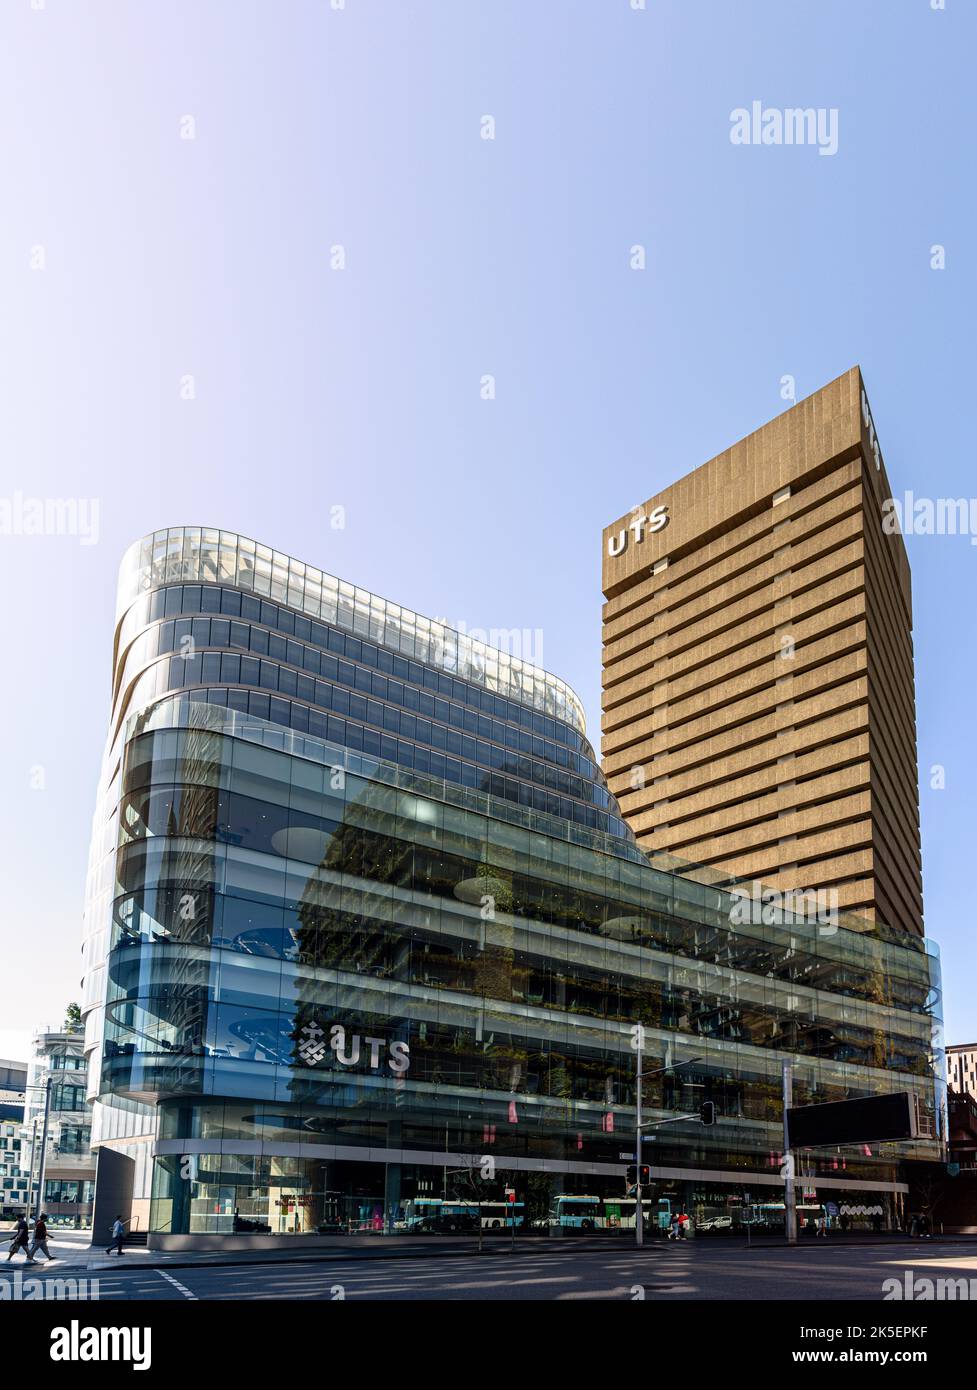 Les bâtiments UTS Central et UTS Tower au City Campus de l'Université de technologie de Sydney Banque D'Images